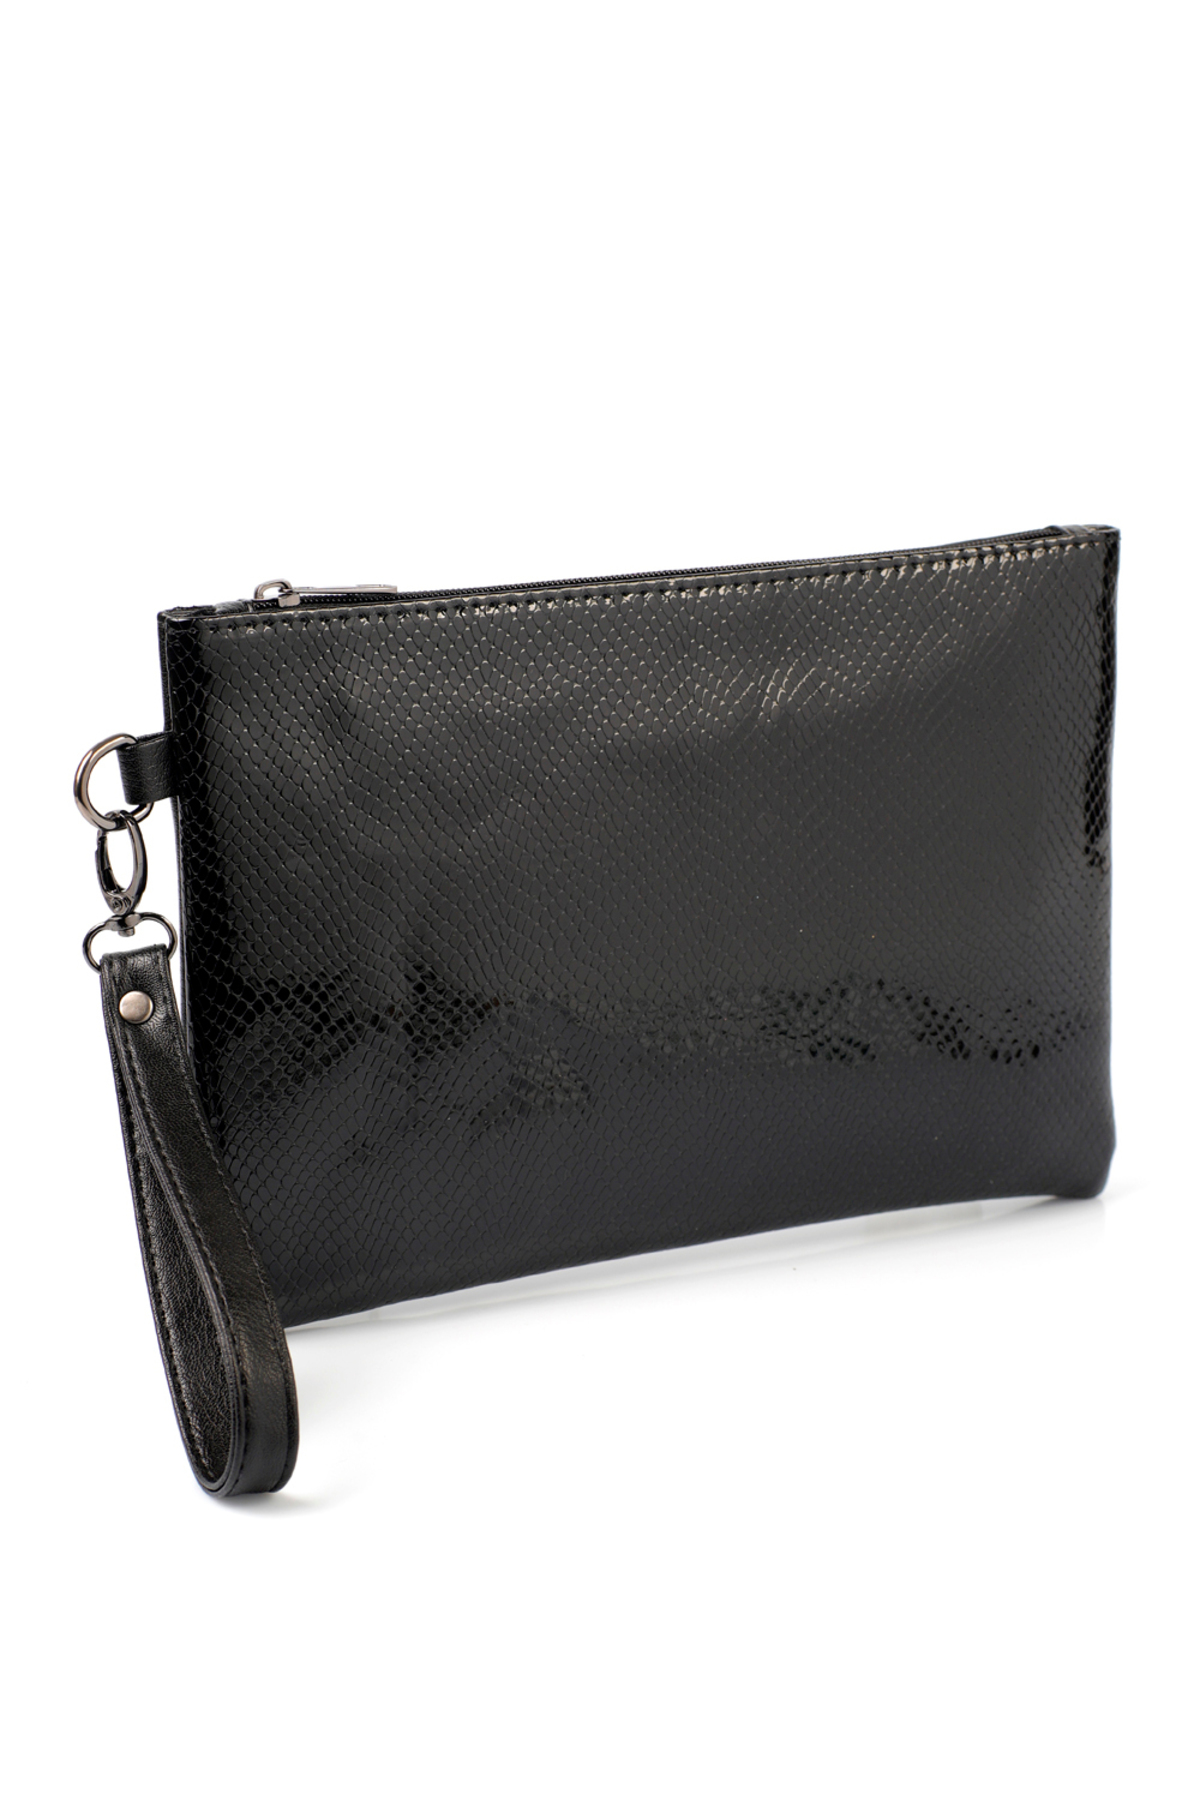 Levně Capone Outfitters Paris Women's Clutch Portfolio Black Bag